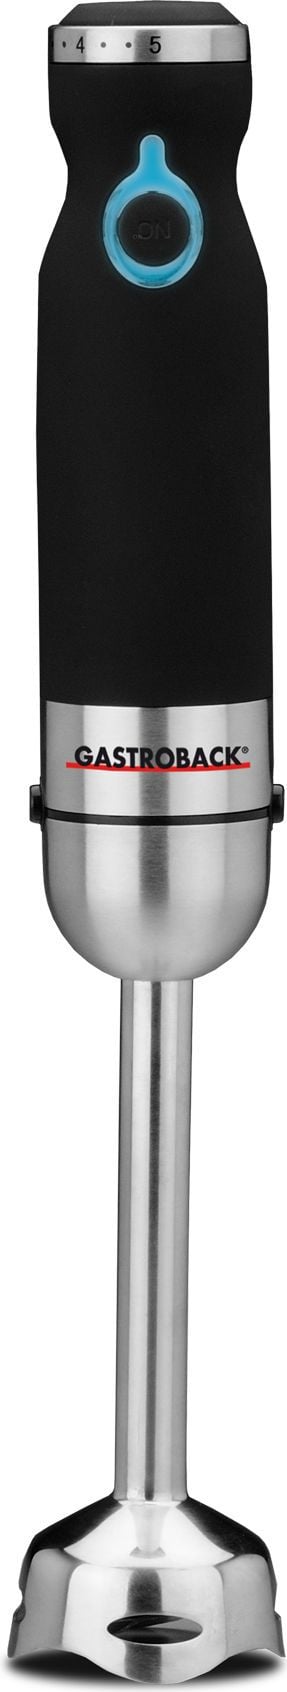 Blender Gastroback 40975